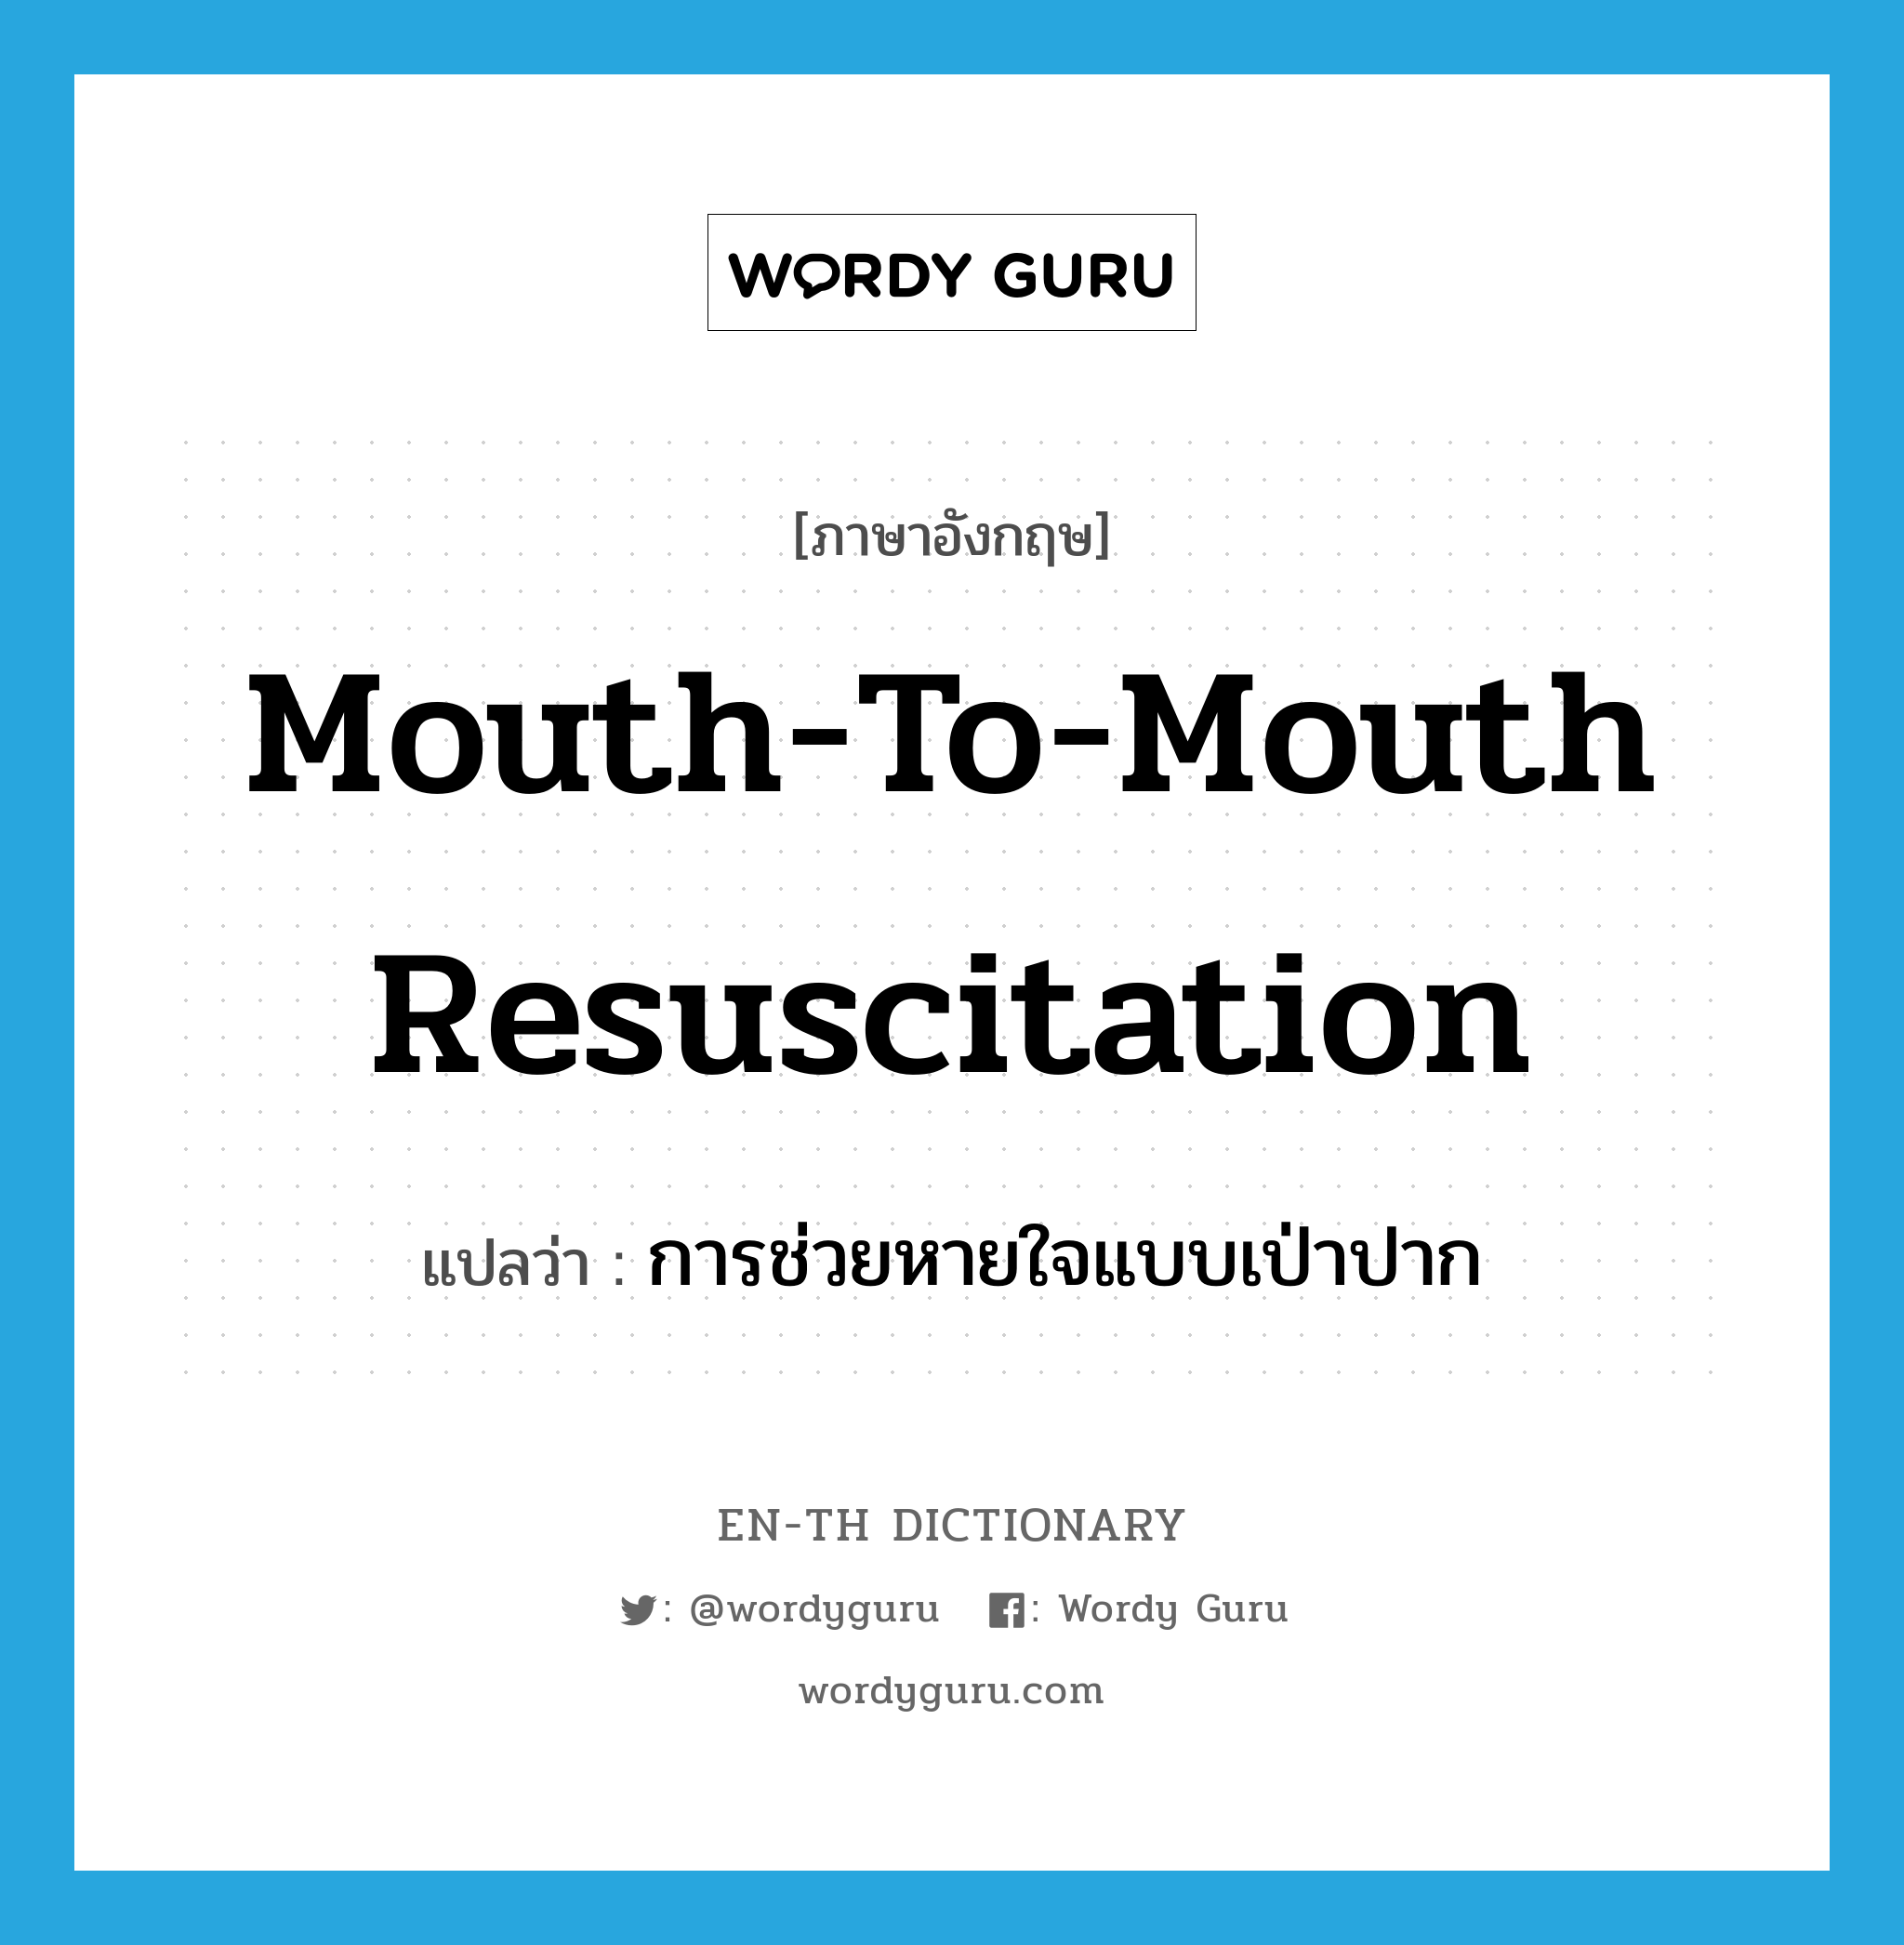 การช่วยหายใจแบบเป่าปาก ภาษาอังกฤษ?, คำศัพท์ภาษาอังกฤษ การช่วยหายใจแบบเป่าปาก แปลว่า mouth-to-mouth resuscitation ประเภท N หมวด N